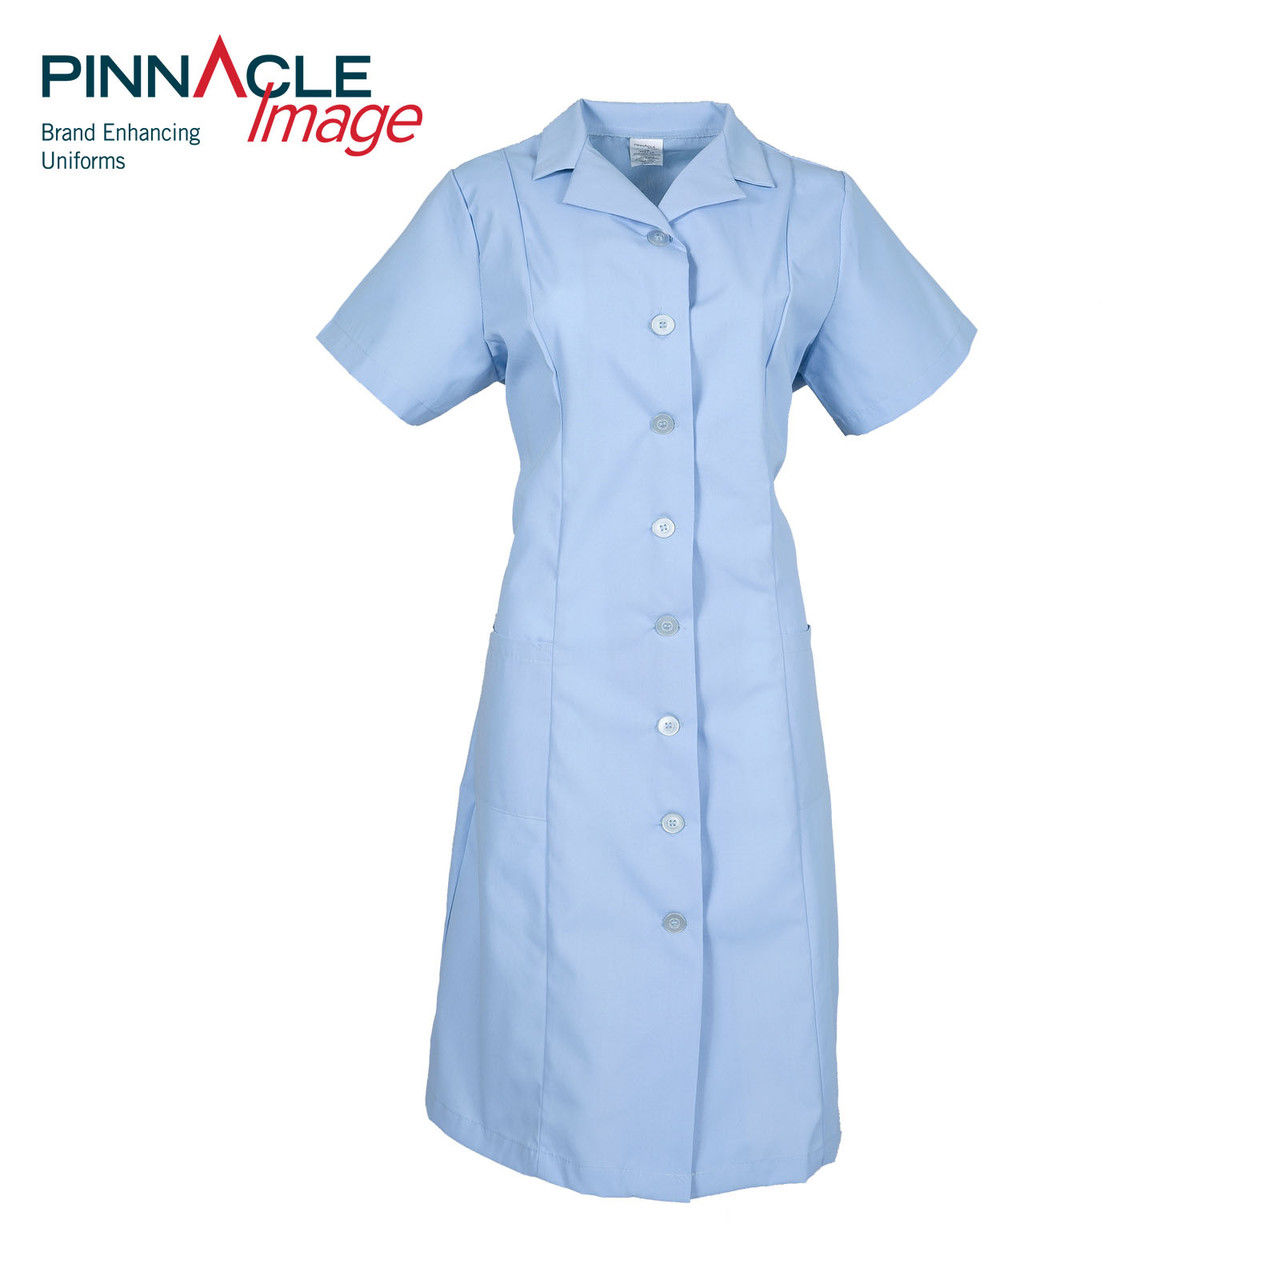 Is the blue uniform dress styled like a princess dress?